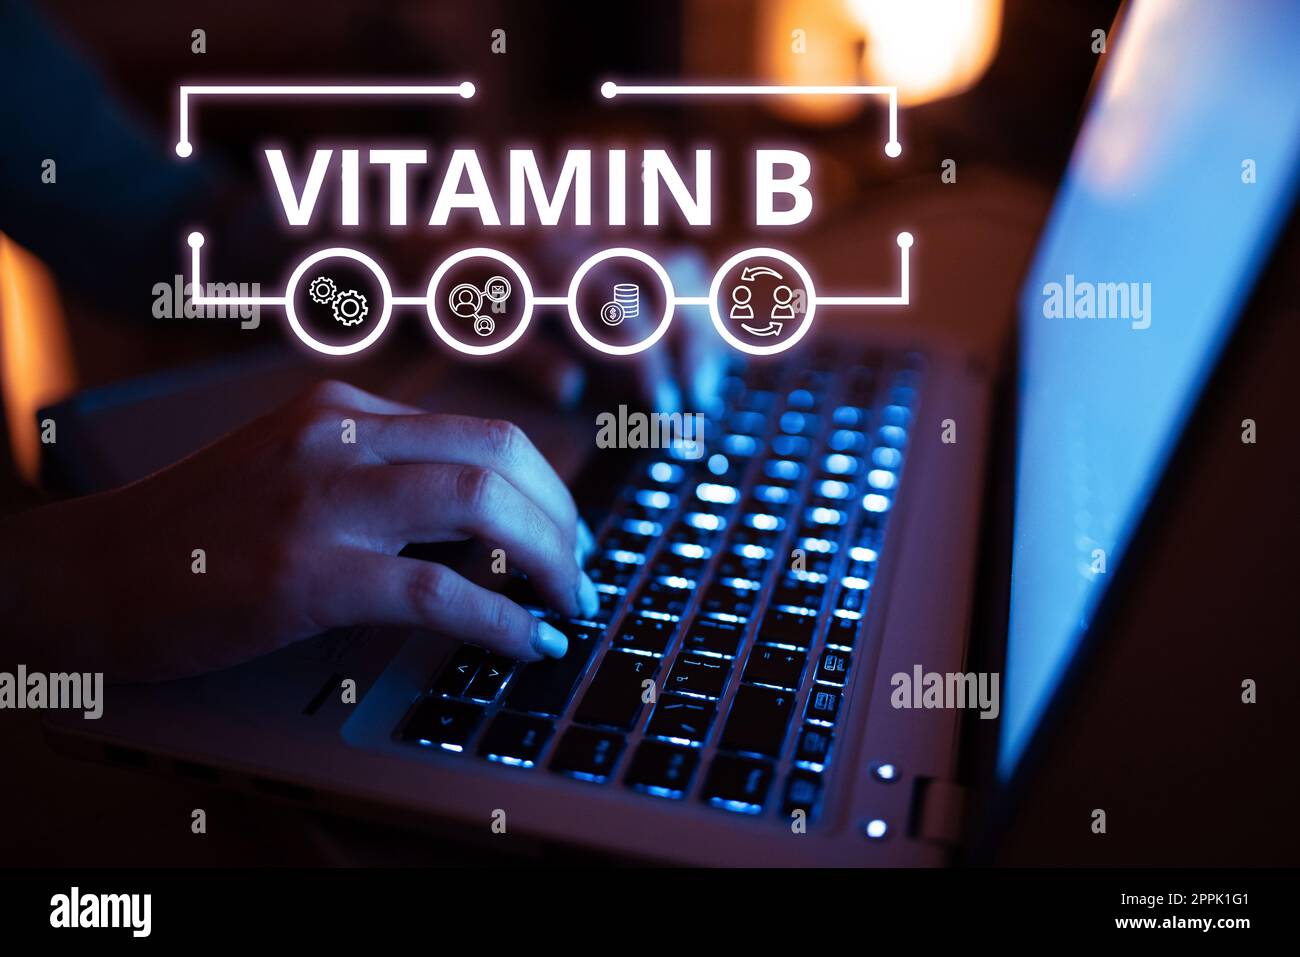 Texte montrant l'inspiration vitamine B. photo conceptuelle Nutrient qui aide à maintenir le nerf du corps et les cellules sanguines en bonne santé Banque D'Images